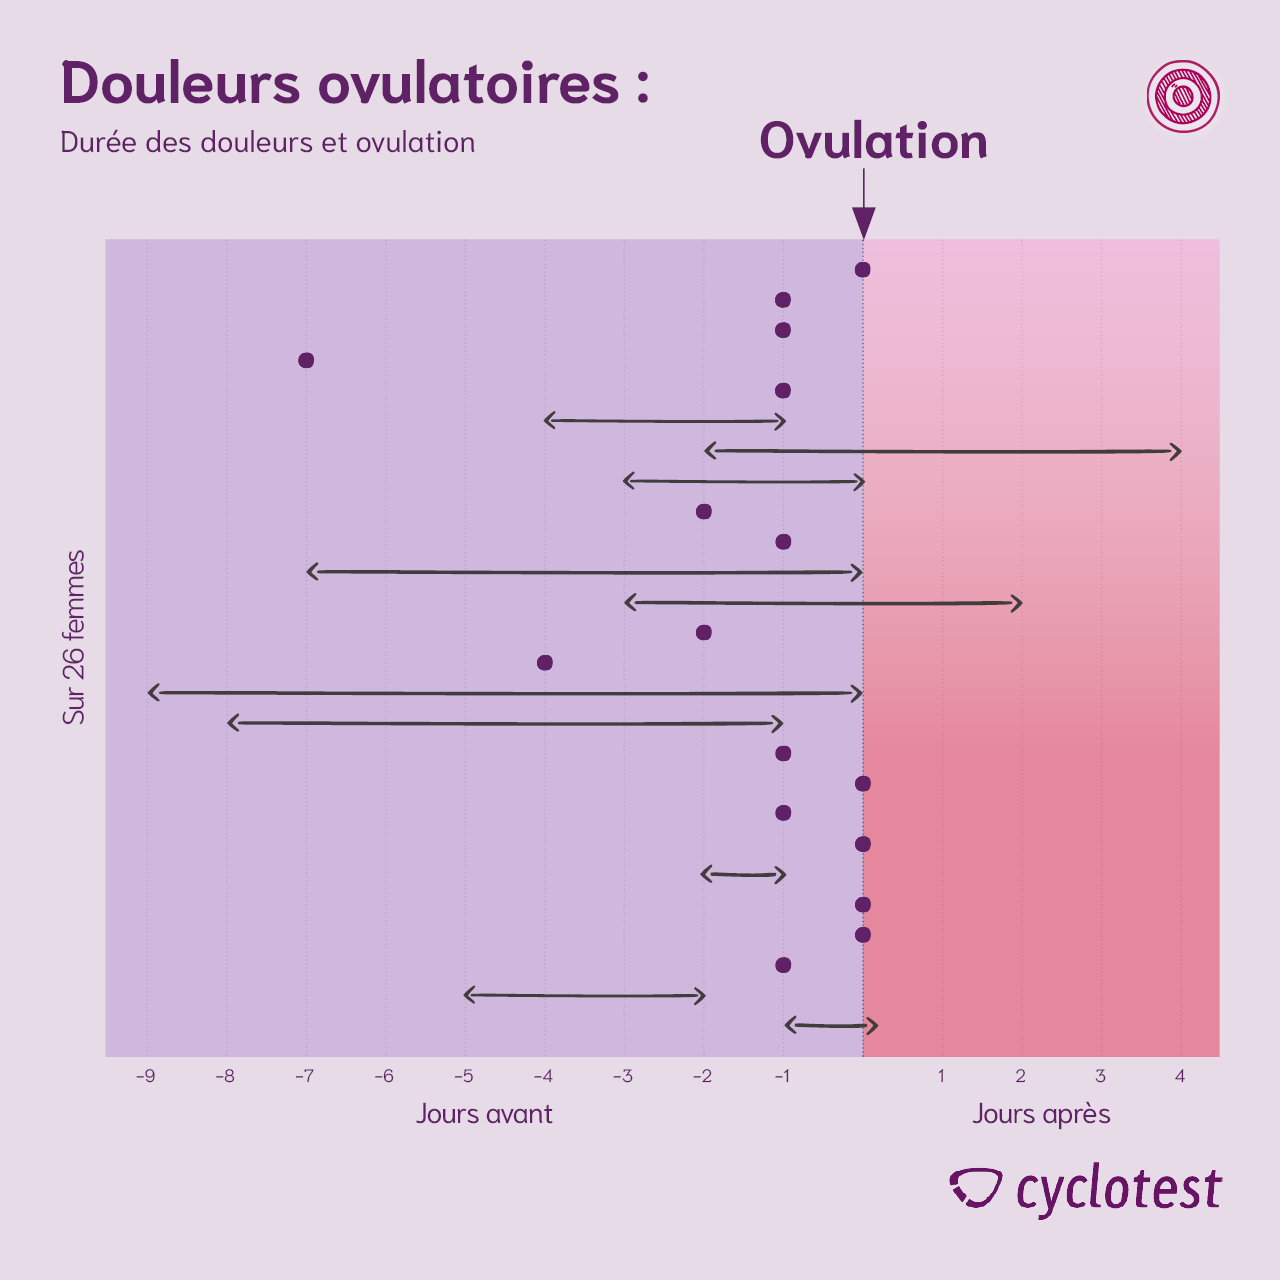 Relation entre la douleur ovulatoire et l'ovulation | Graphique : © cyclotest - propre illustration basée sur Freundl G. et al. 1991